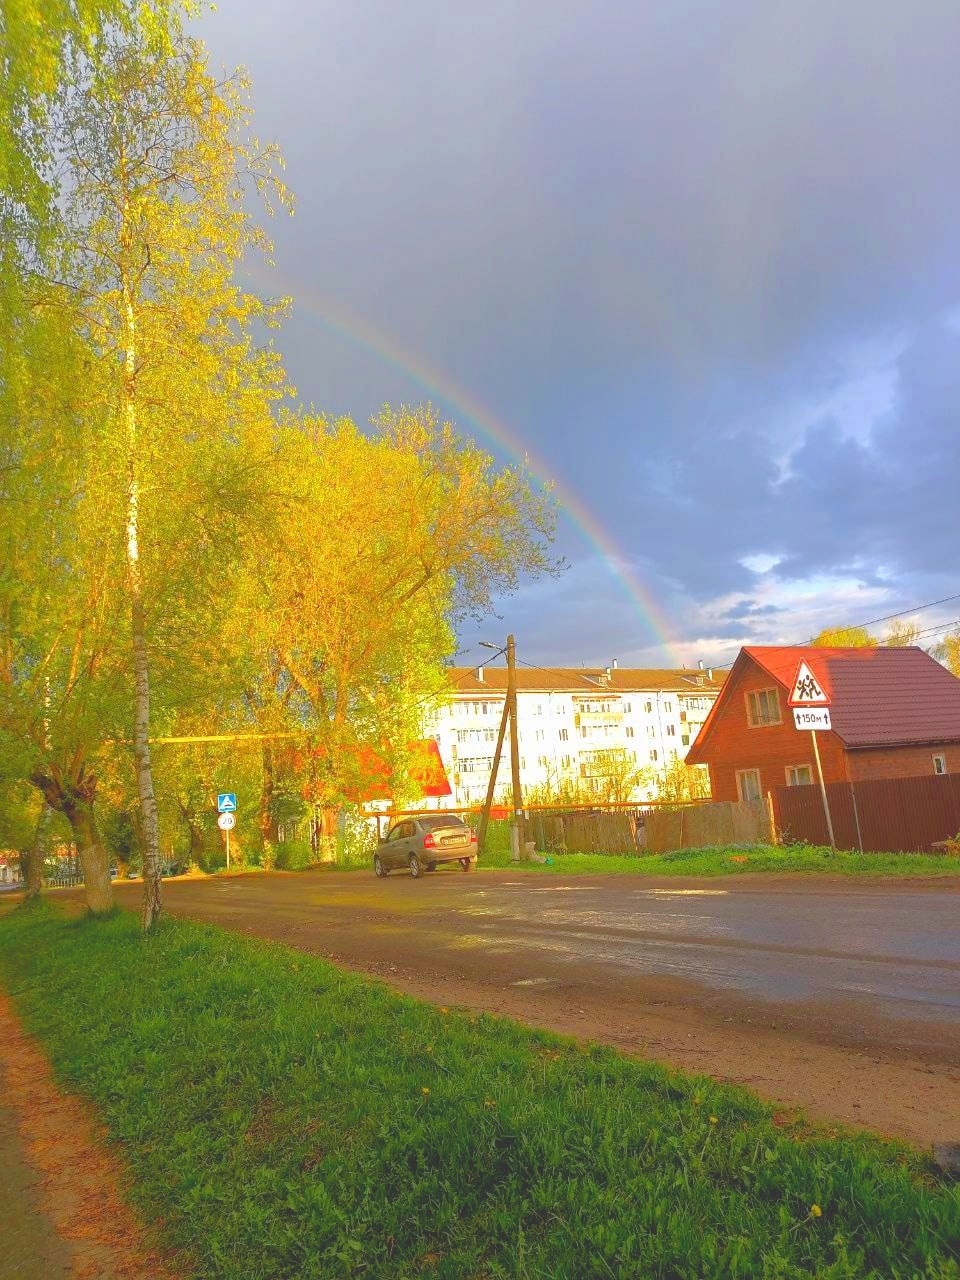 Жители Владимирской области смогли запечатлеть в небе редкую тройную радугу. Фотографии красивого оптического явления появились в Интернете. 